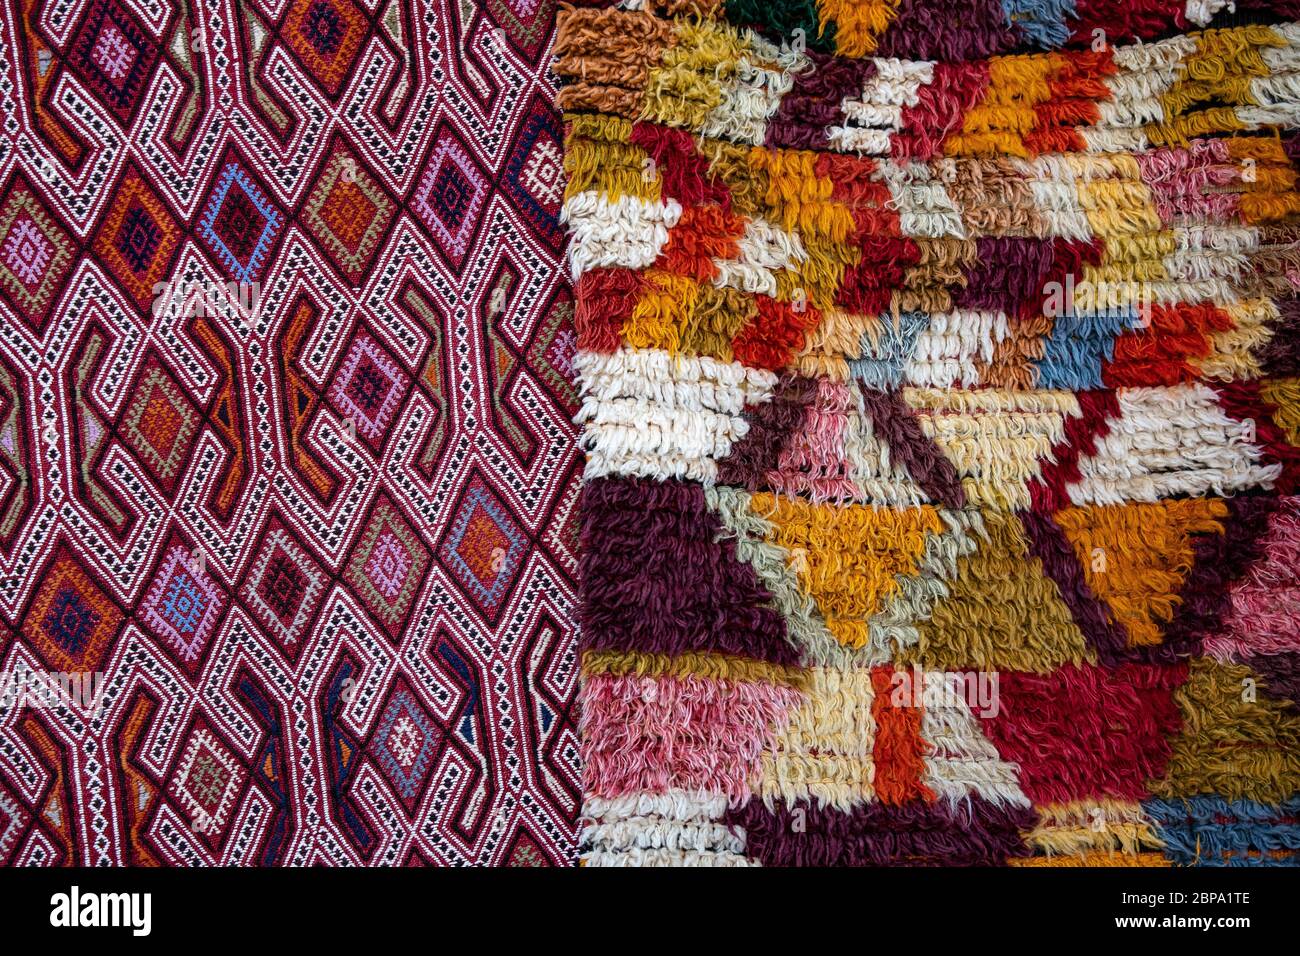 Fond turc de tapis ornementaux. Moquette moelleuse colorée avec motif losange et tapis rasé. Texture tissée. Tapis à motif ethnique. Traditio Banque D'Images